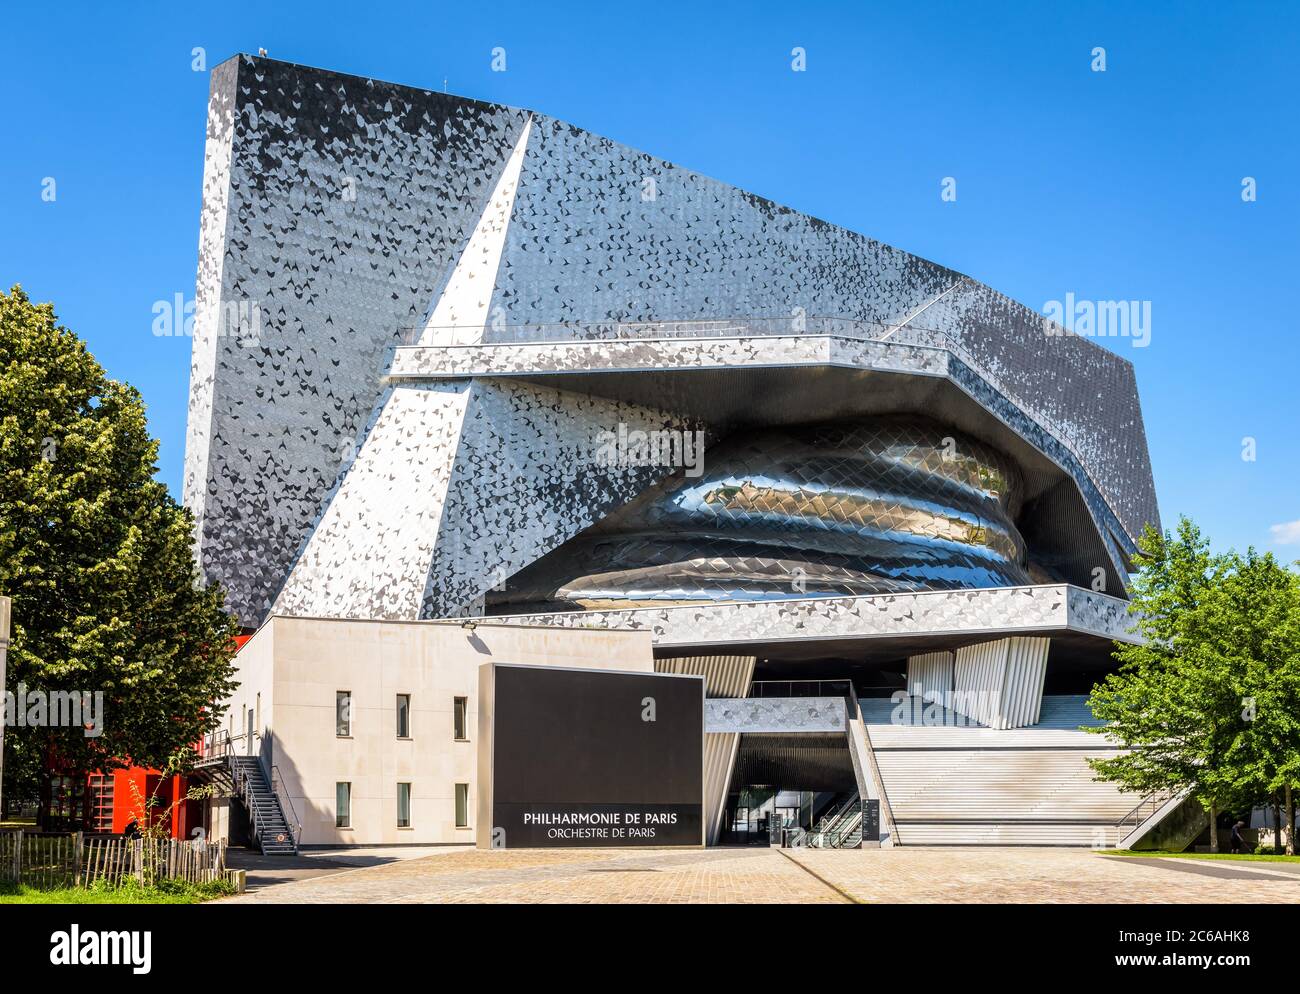 Entrance of the Philharmonie de Paris concert halls complex, designed by french architect Jean Nouvel and built in 2015 in the Parc de la Villette. Stock Photo